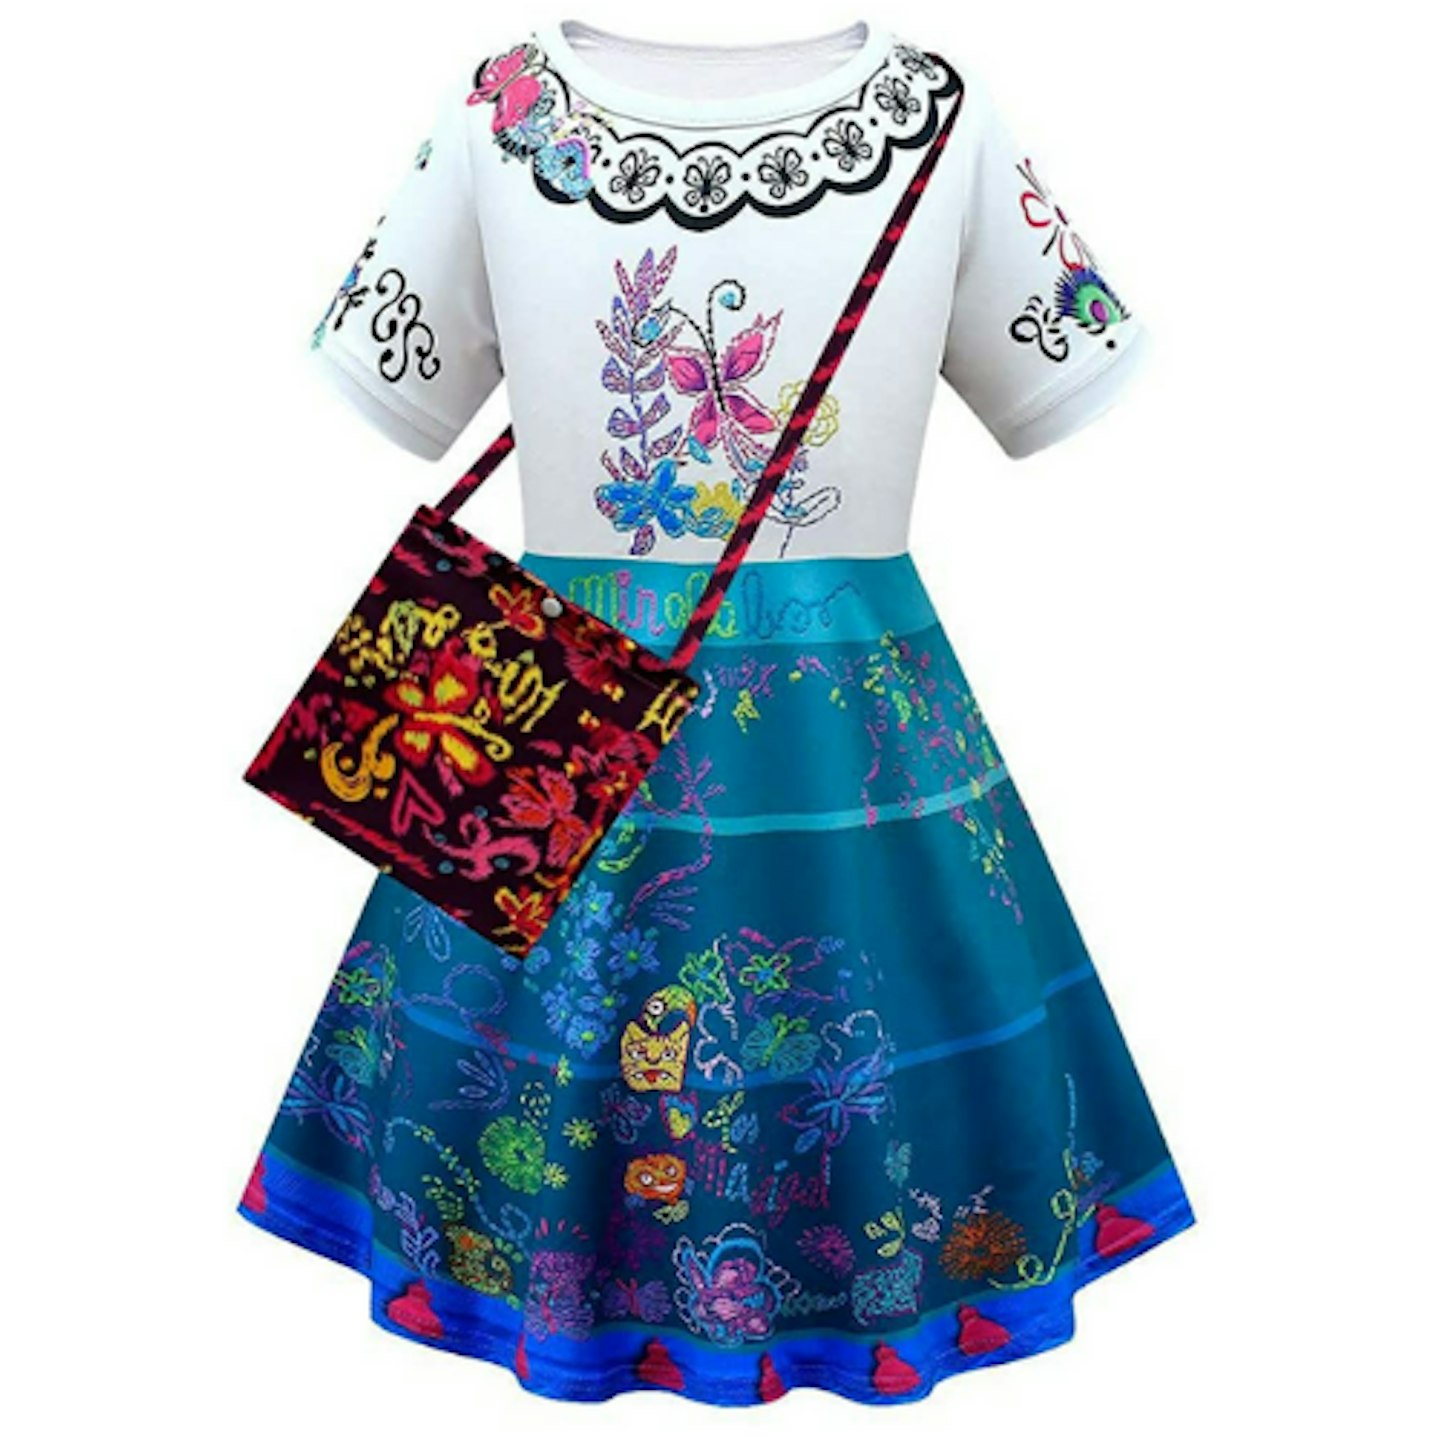 Mirabel Dress for Girls 2